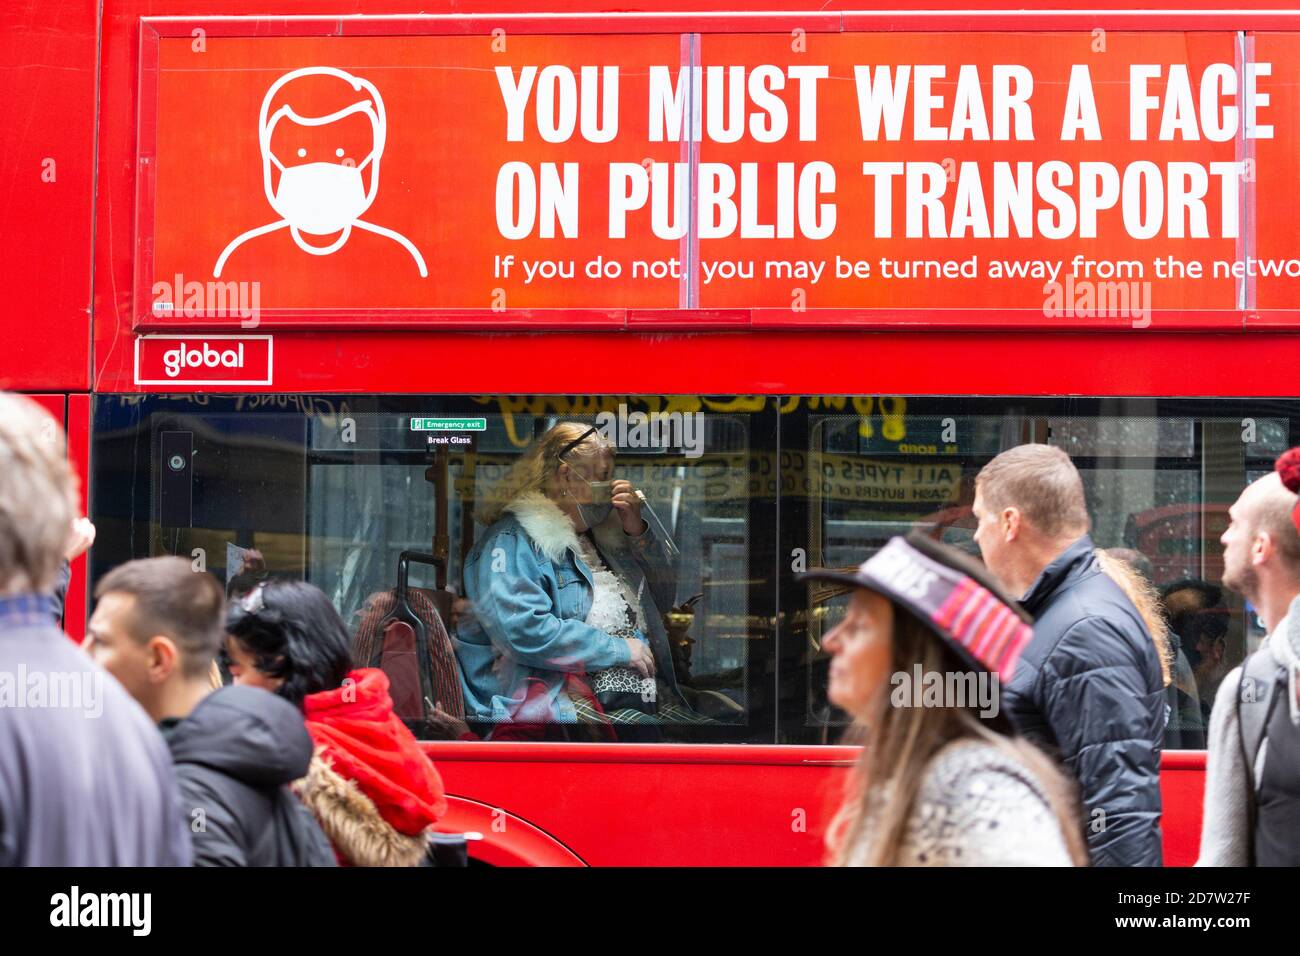 Les manifestants défilent devant une femme portant un masque sur un bus portant une signalisation COVID-19 lors d'un rassemblement anti-verrouillage à Londres, le 24 octobre 2020 Banque D'Images